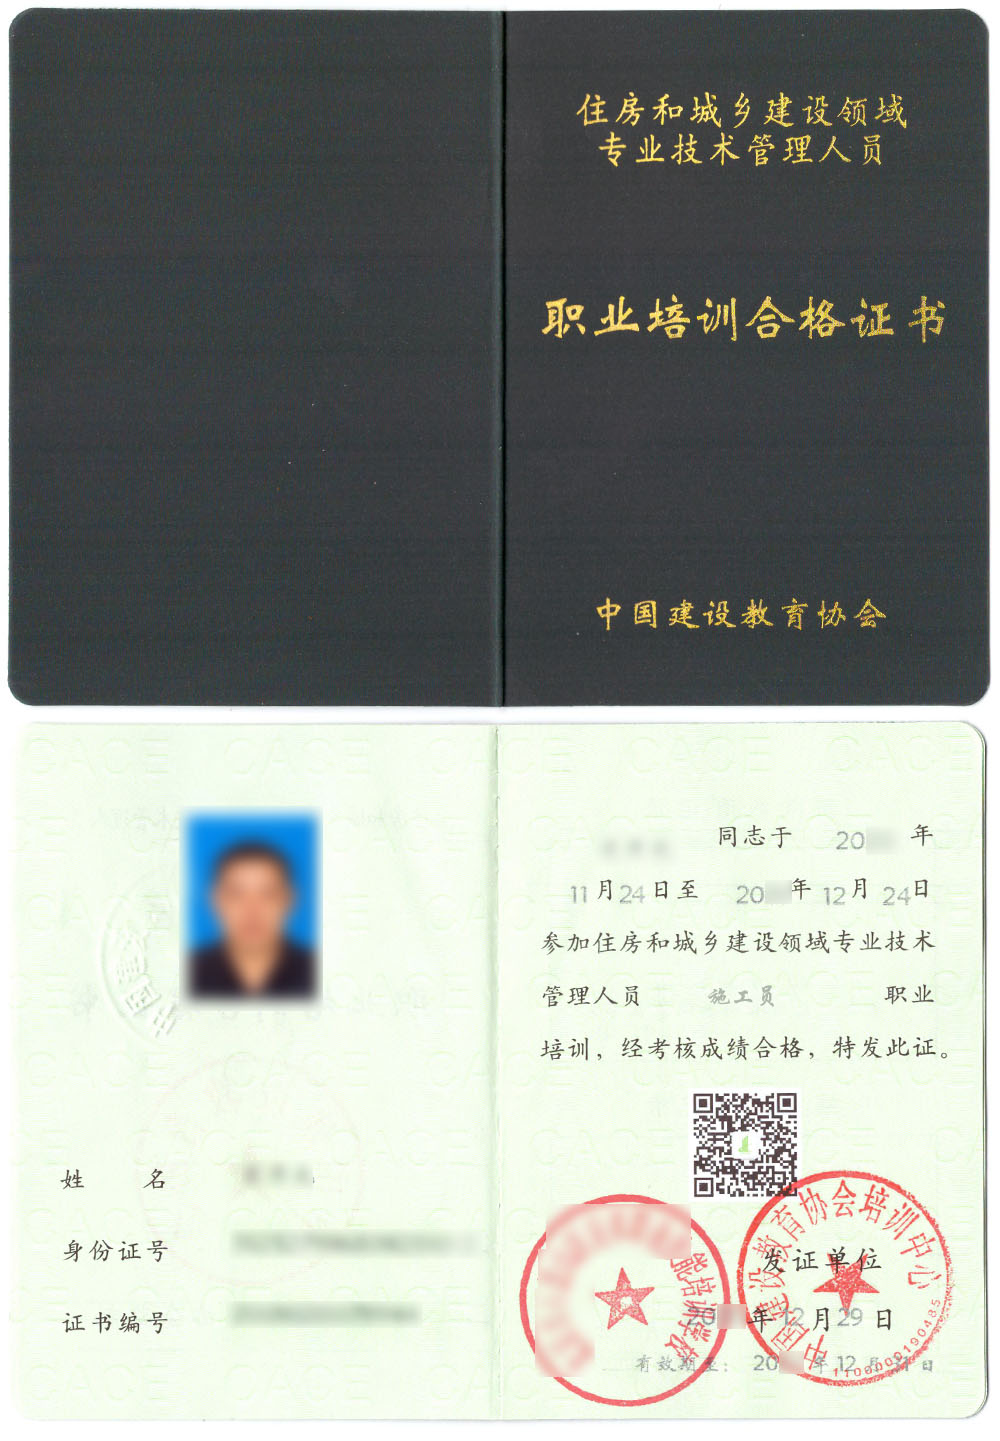 中国建设教育协会 住房和城乡建设领域专业技术管理人员职业培训合格证书 施工员证证书样本